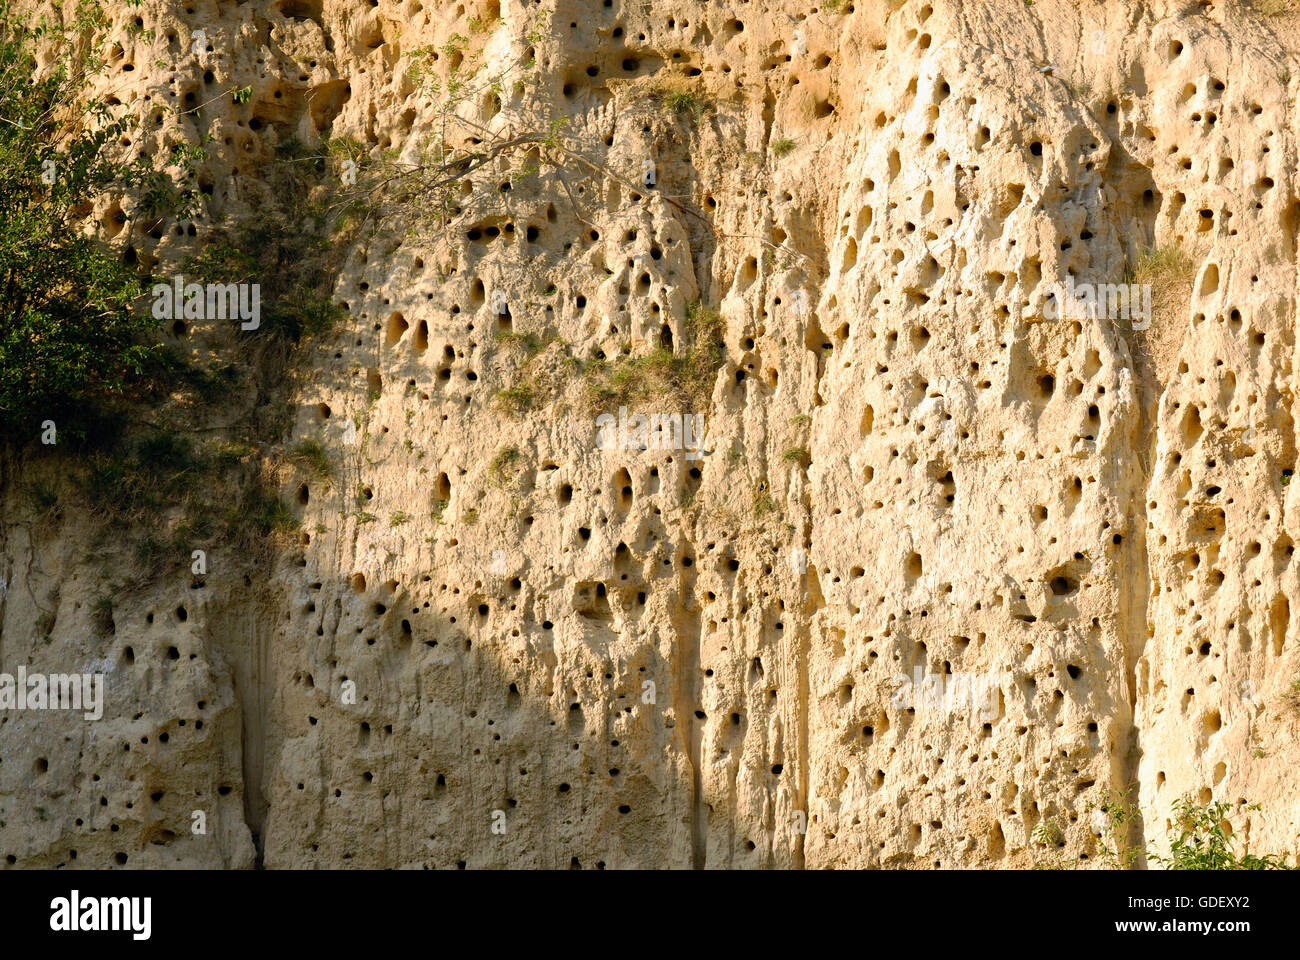 Steilwand in Sandgrube Brutplatz Bienenfresser und Blauracke, bei Plovdiv, Bulgarien / Brutkolonie Stock Photo